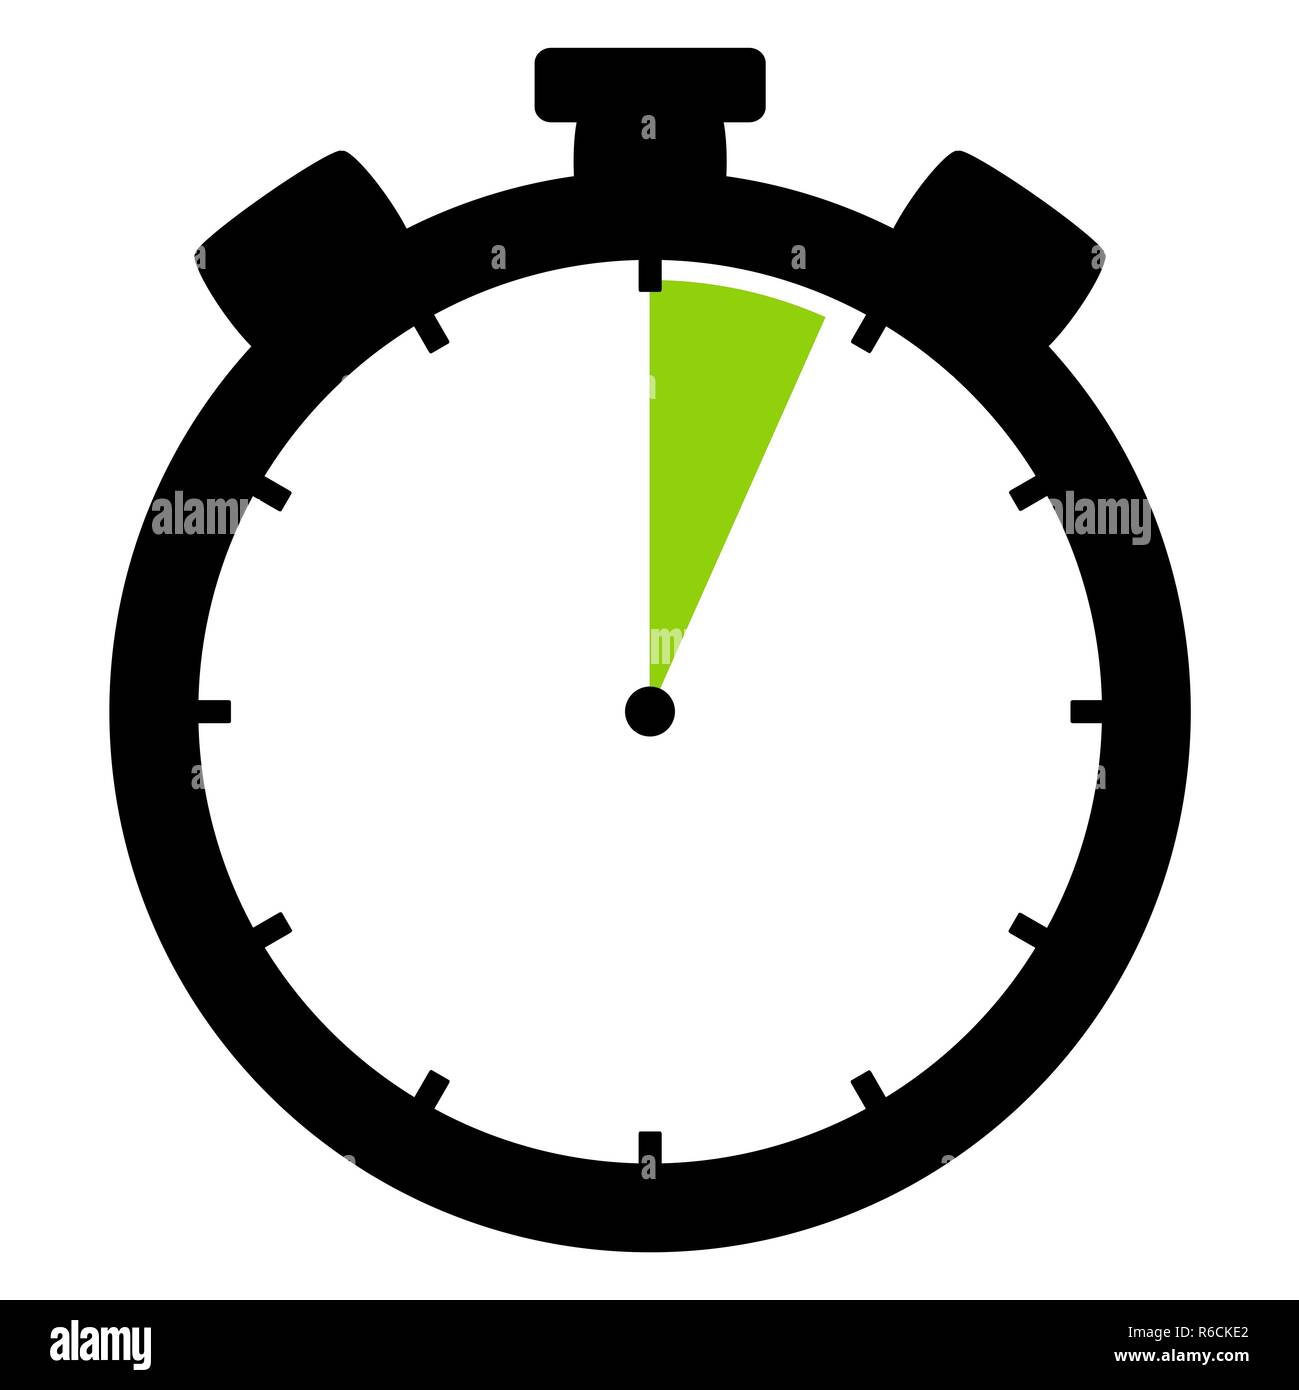 Icono cronómetro: 4 minutos y 4 segundos. Foto de stock